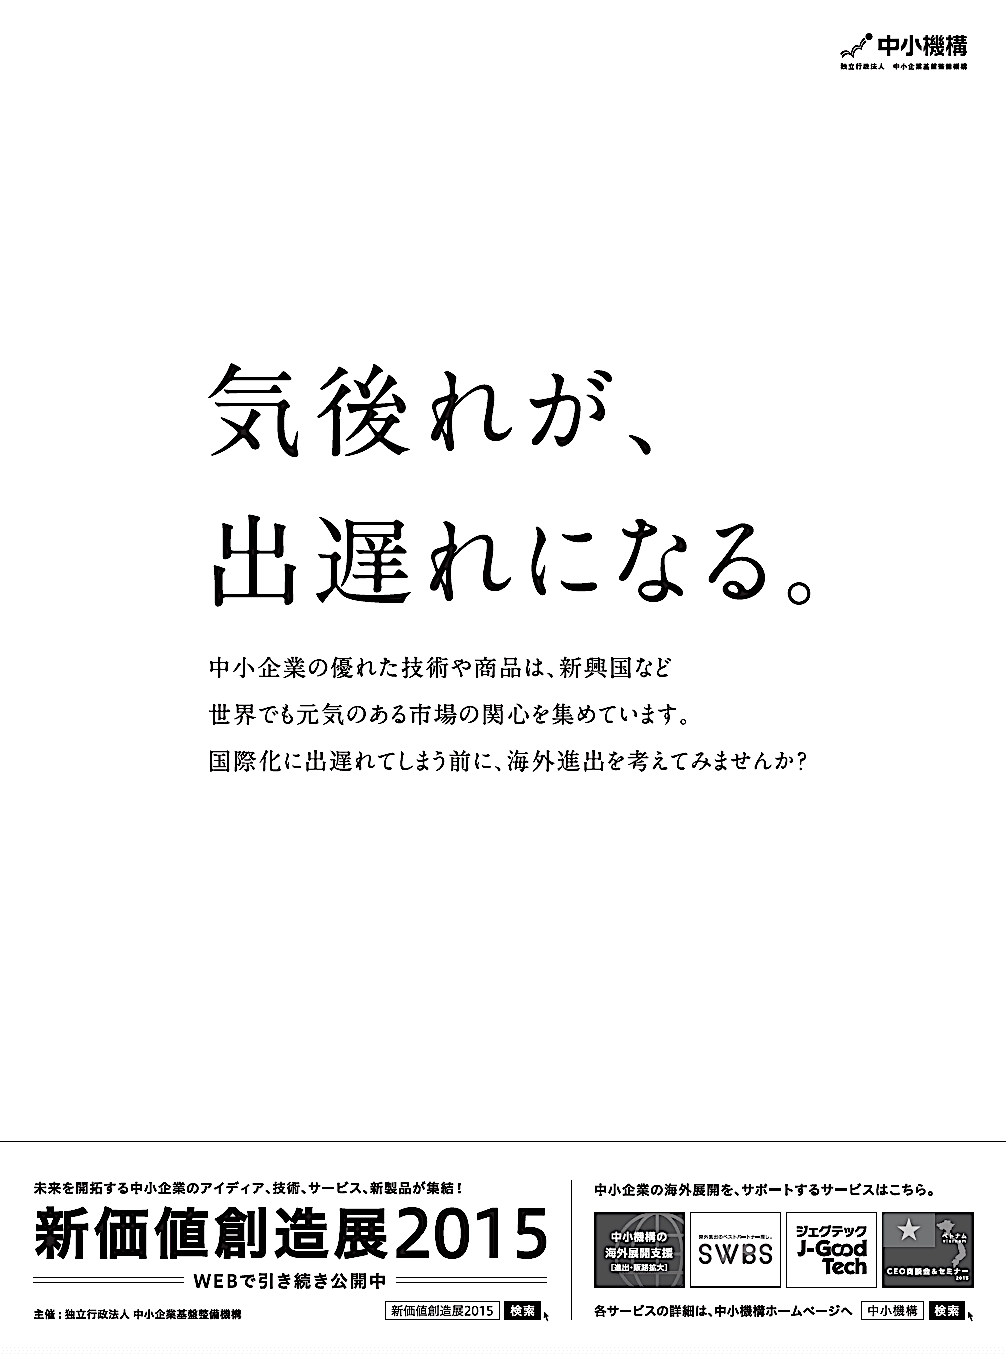 官公庁 新聞広告作成_135